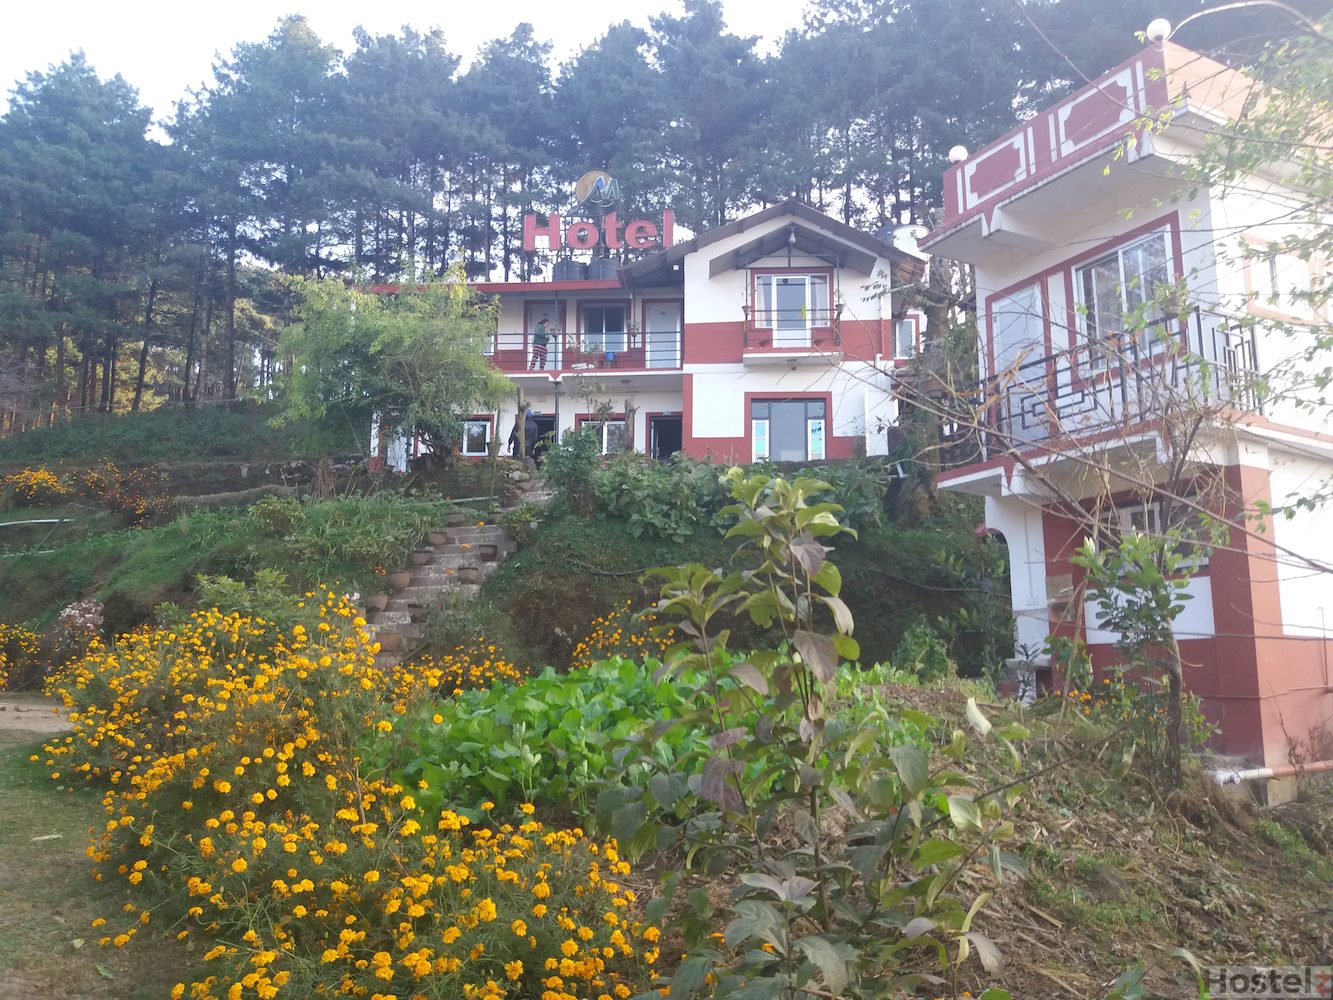 Hotel Mount Paradise, Nagarkot